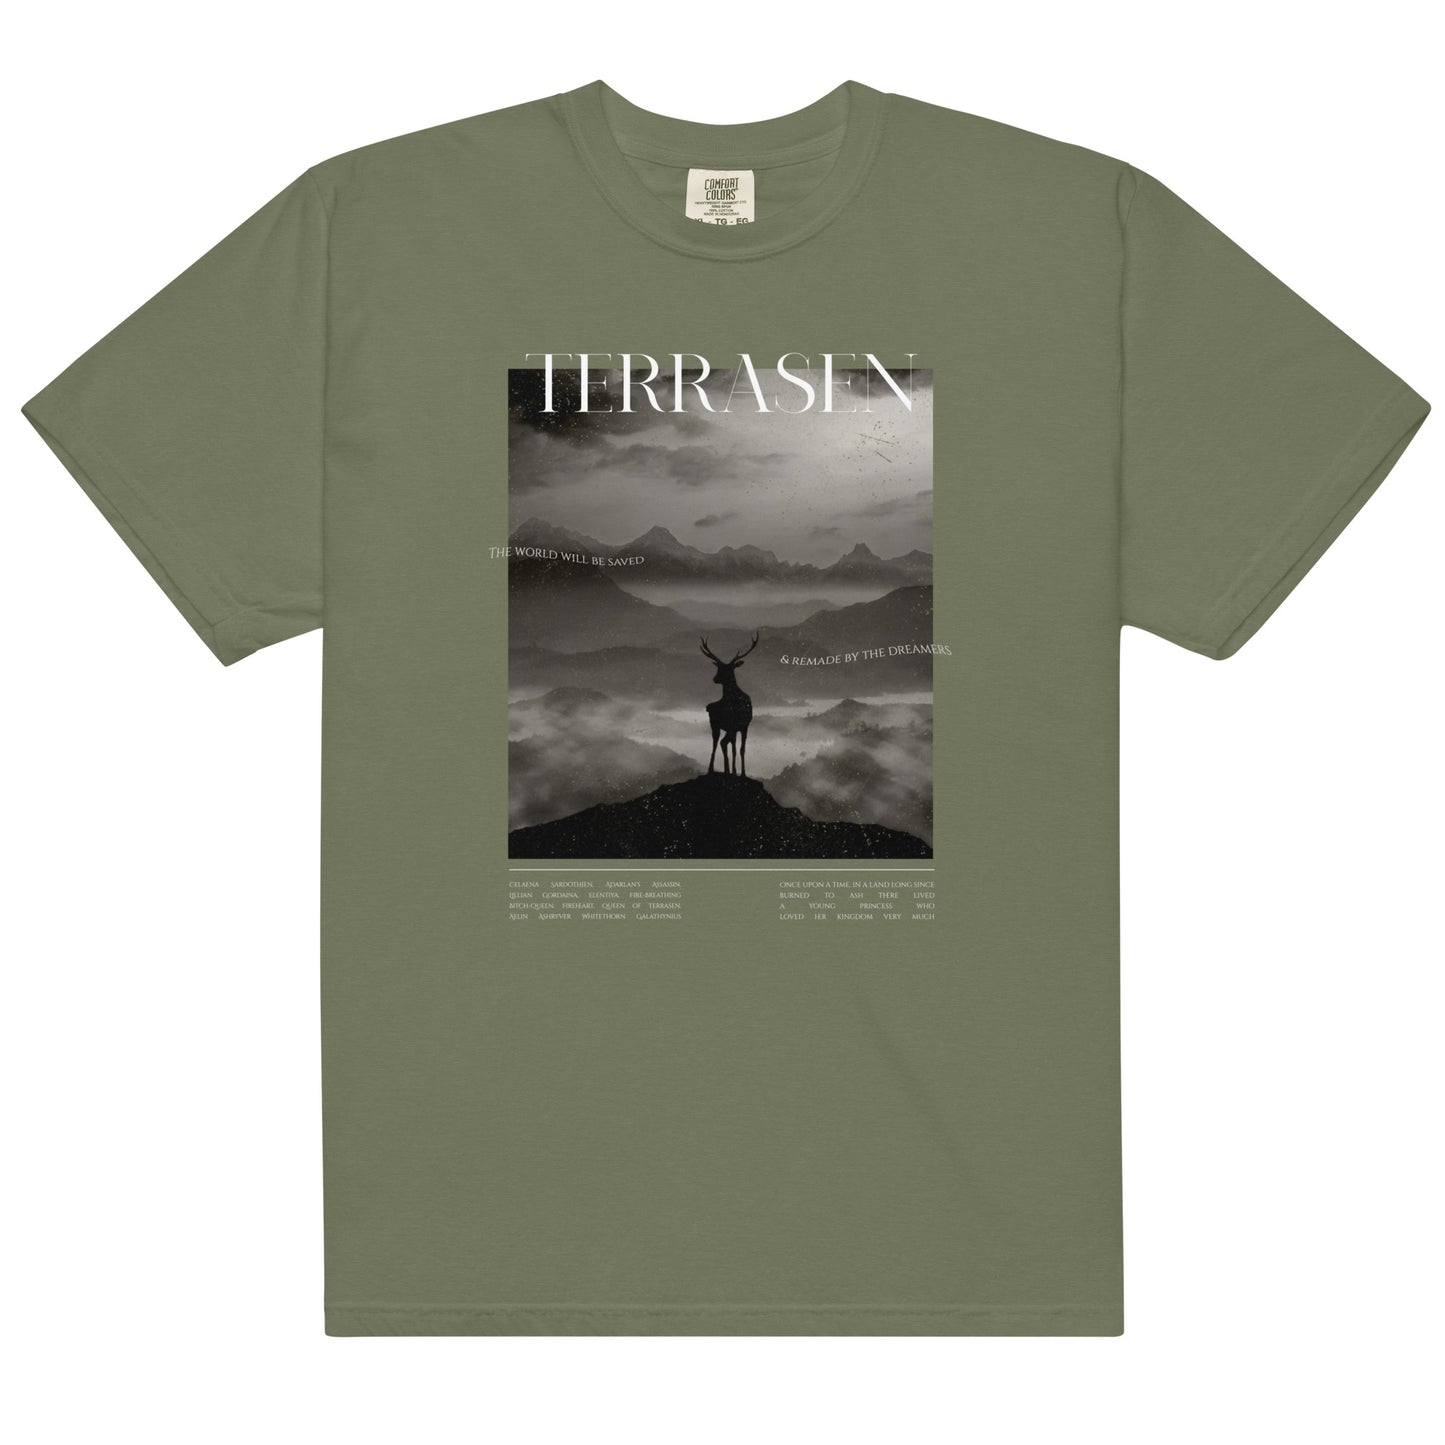 Visit Terrasen Tshirt